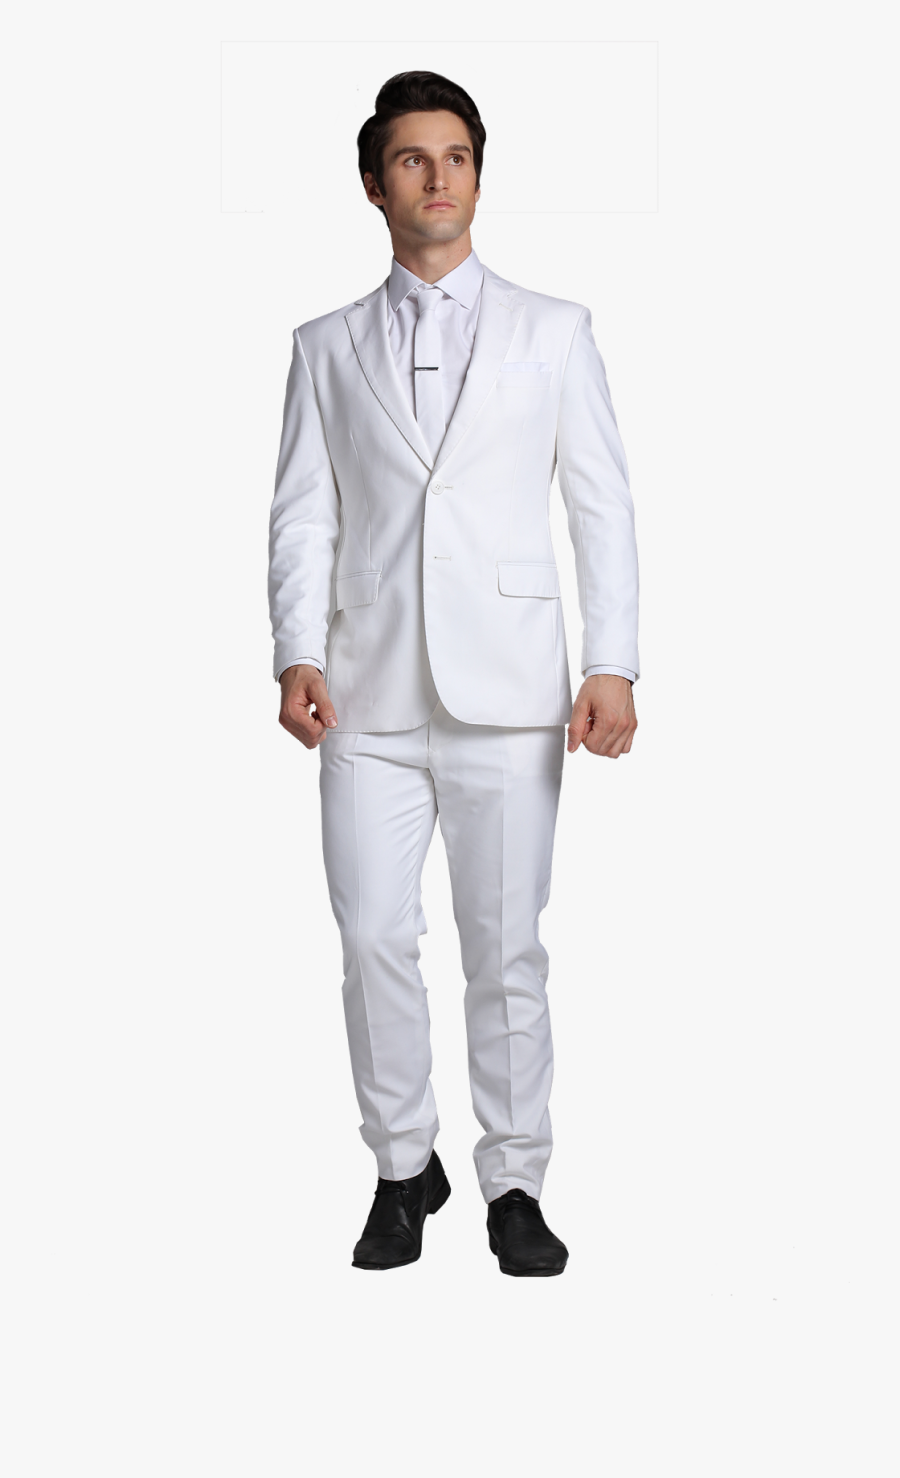 White Suit Png - White Men Suit Png, Transparent Clipart